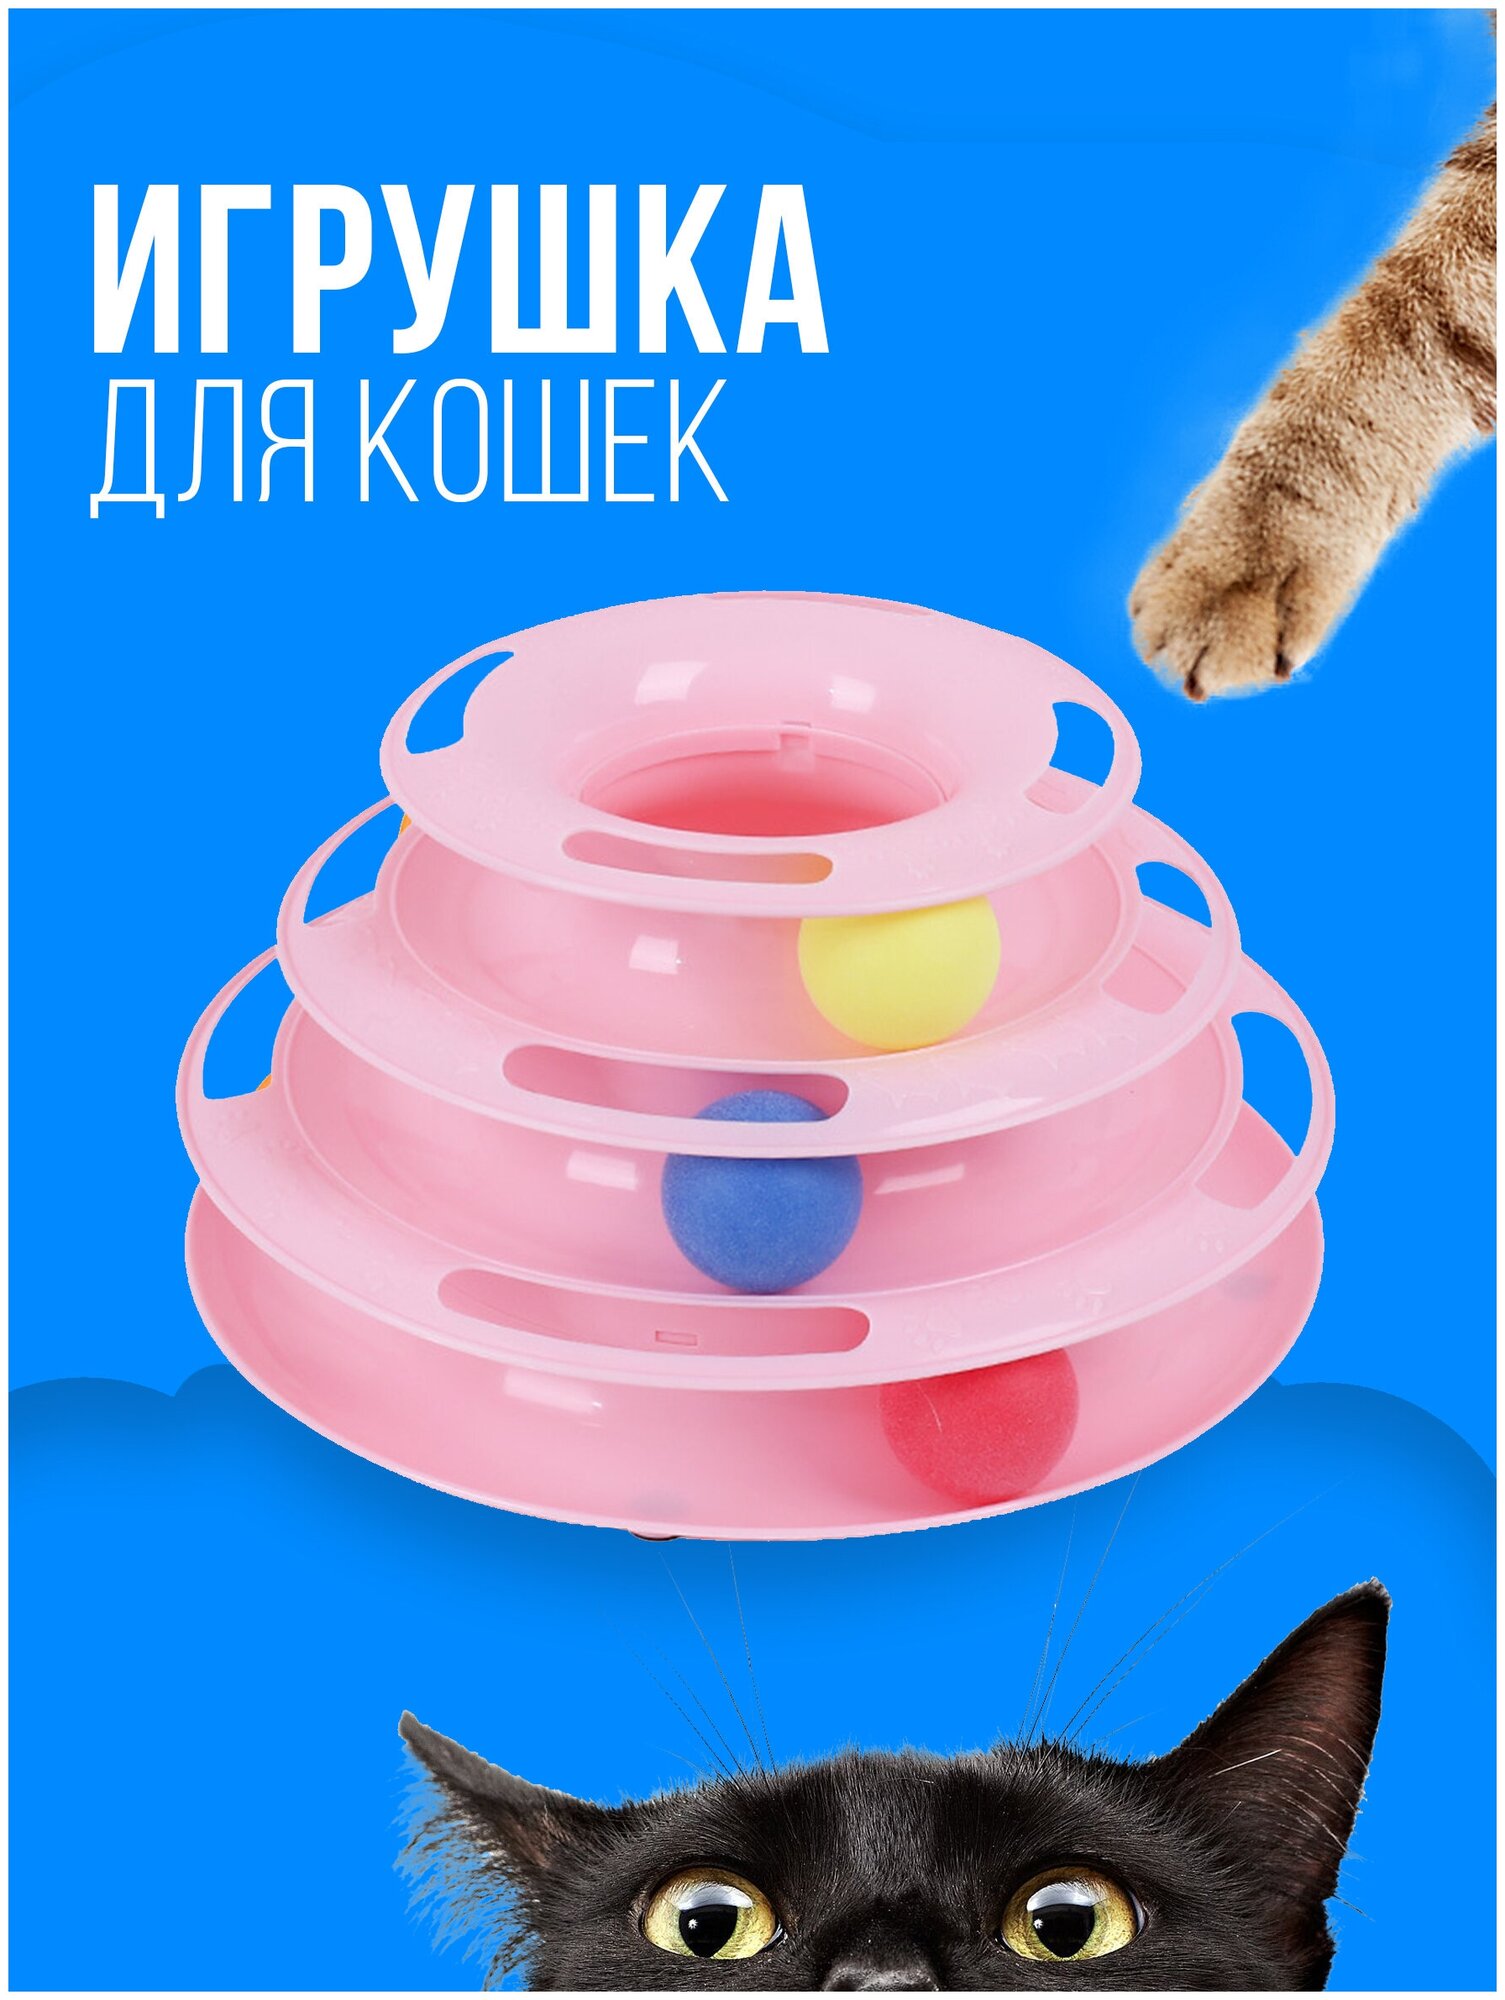 Игрушка для кошек интерактивная / Игрушка для кошек шарики, 3 уровня, 3 шарика / пирамида, башня, интерактивная, для котов, котят, котенка